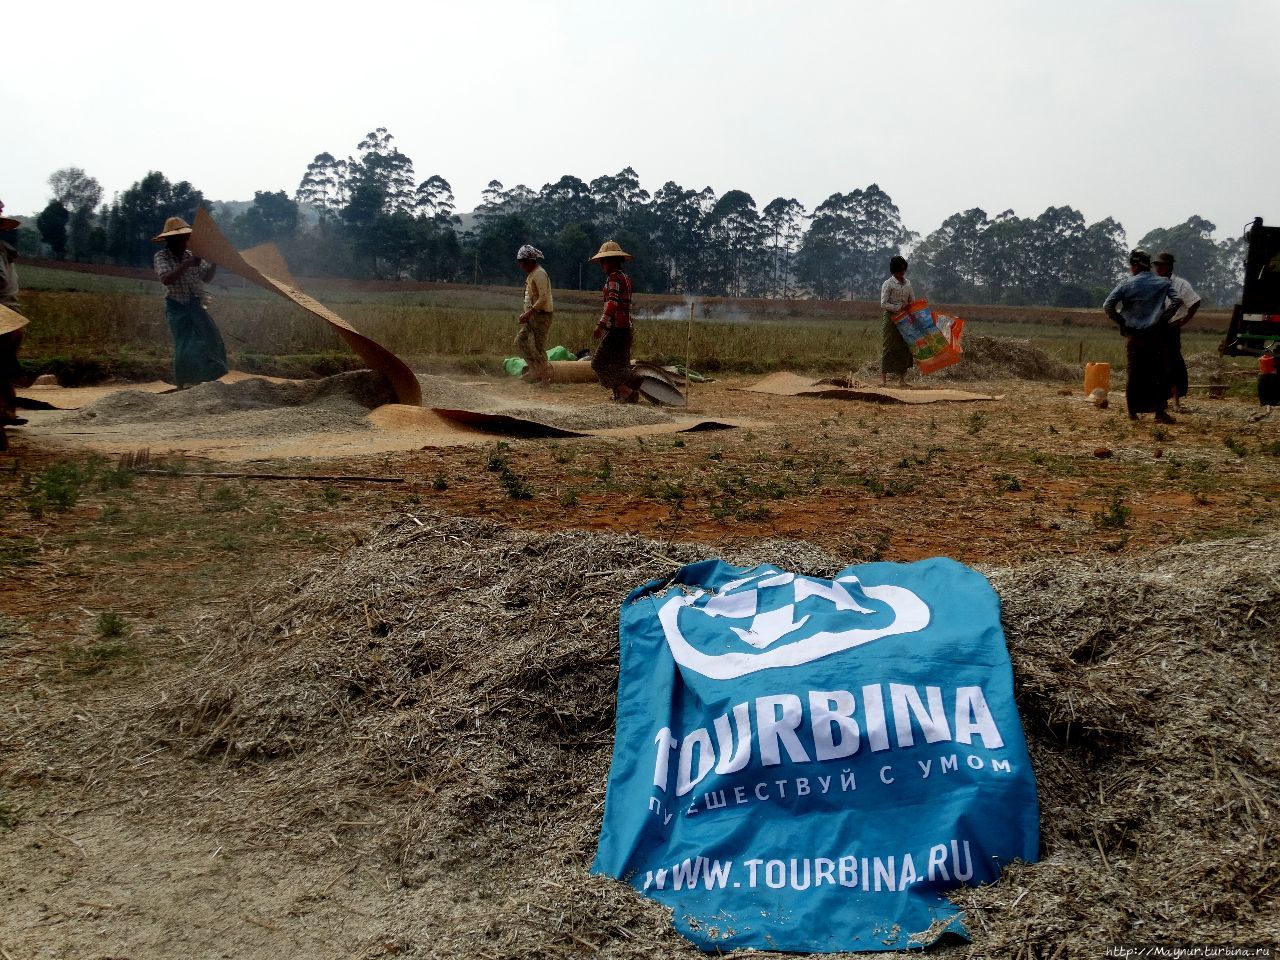 Флаг на просяном поле. Идет просеивание зерна. Второй день трека. Мандалай, Мьянма